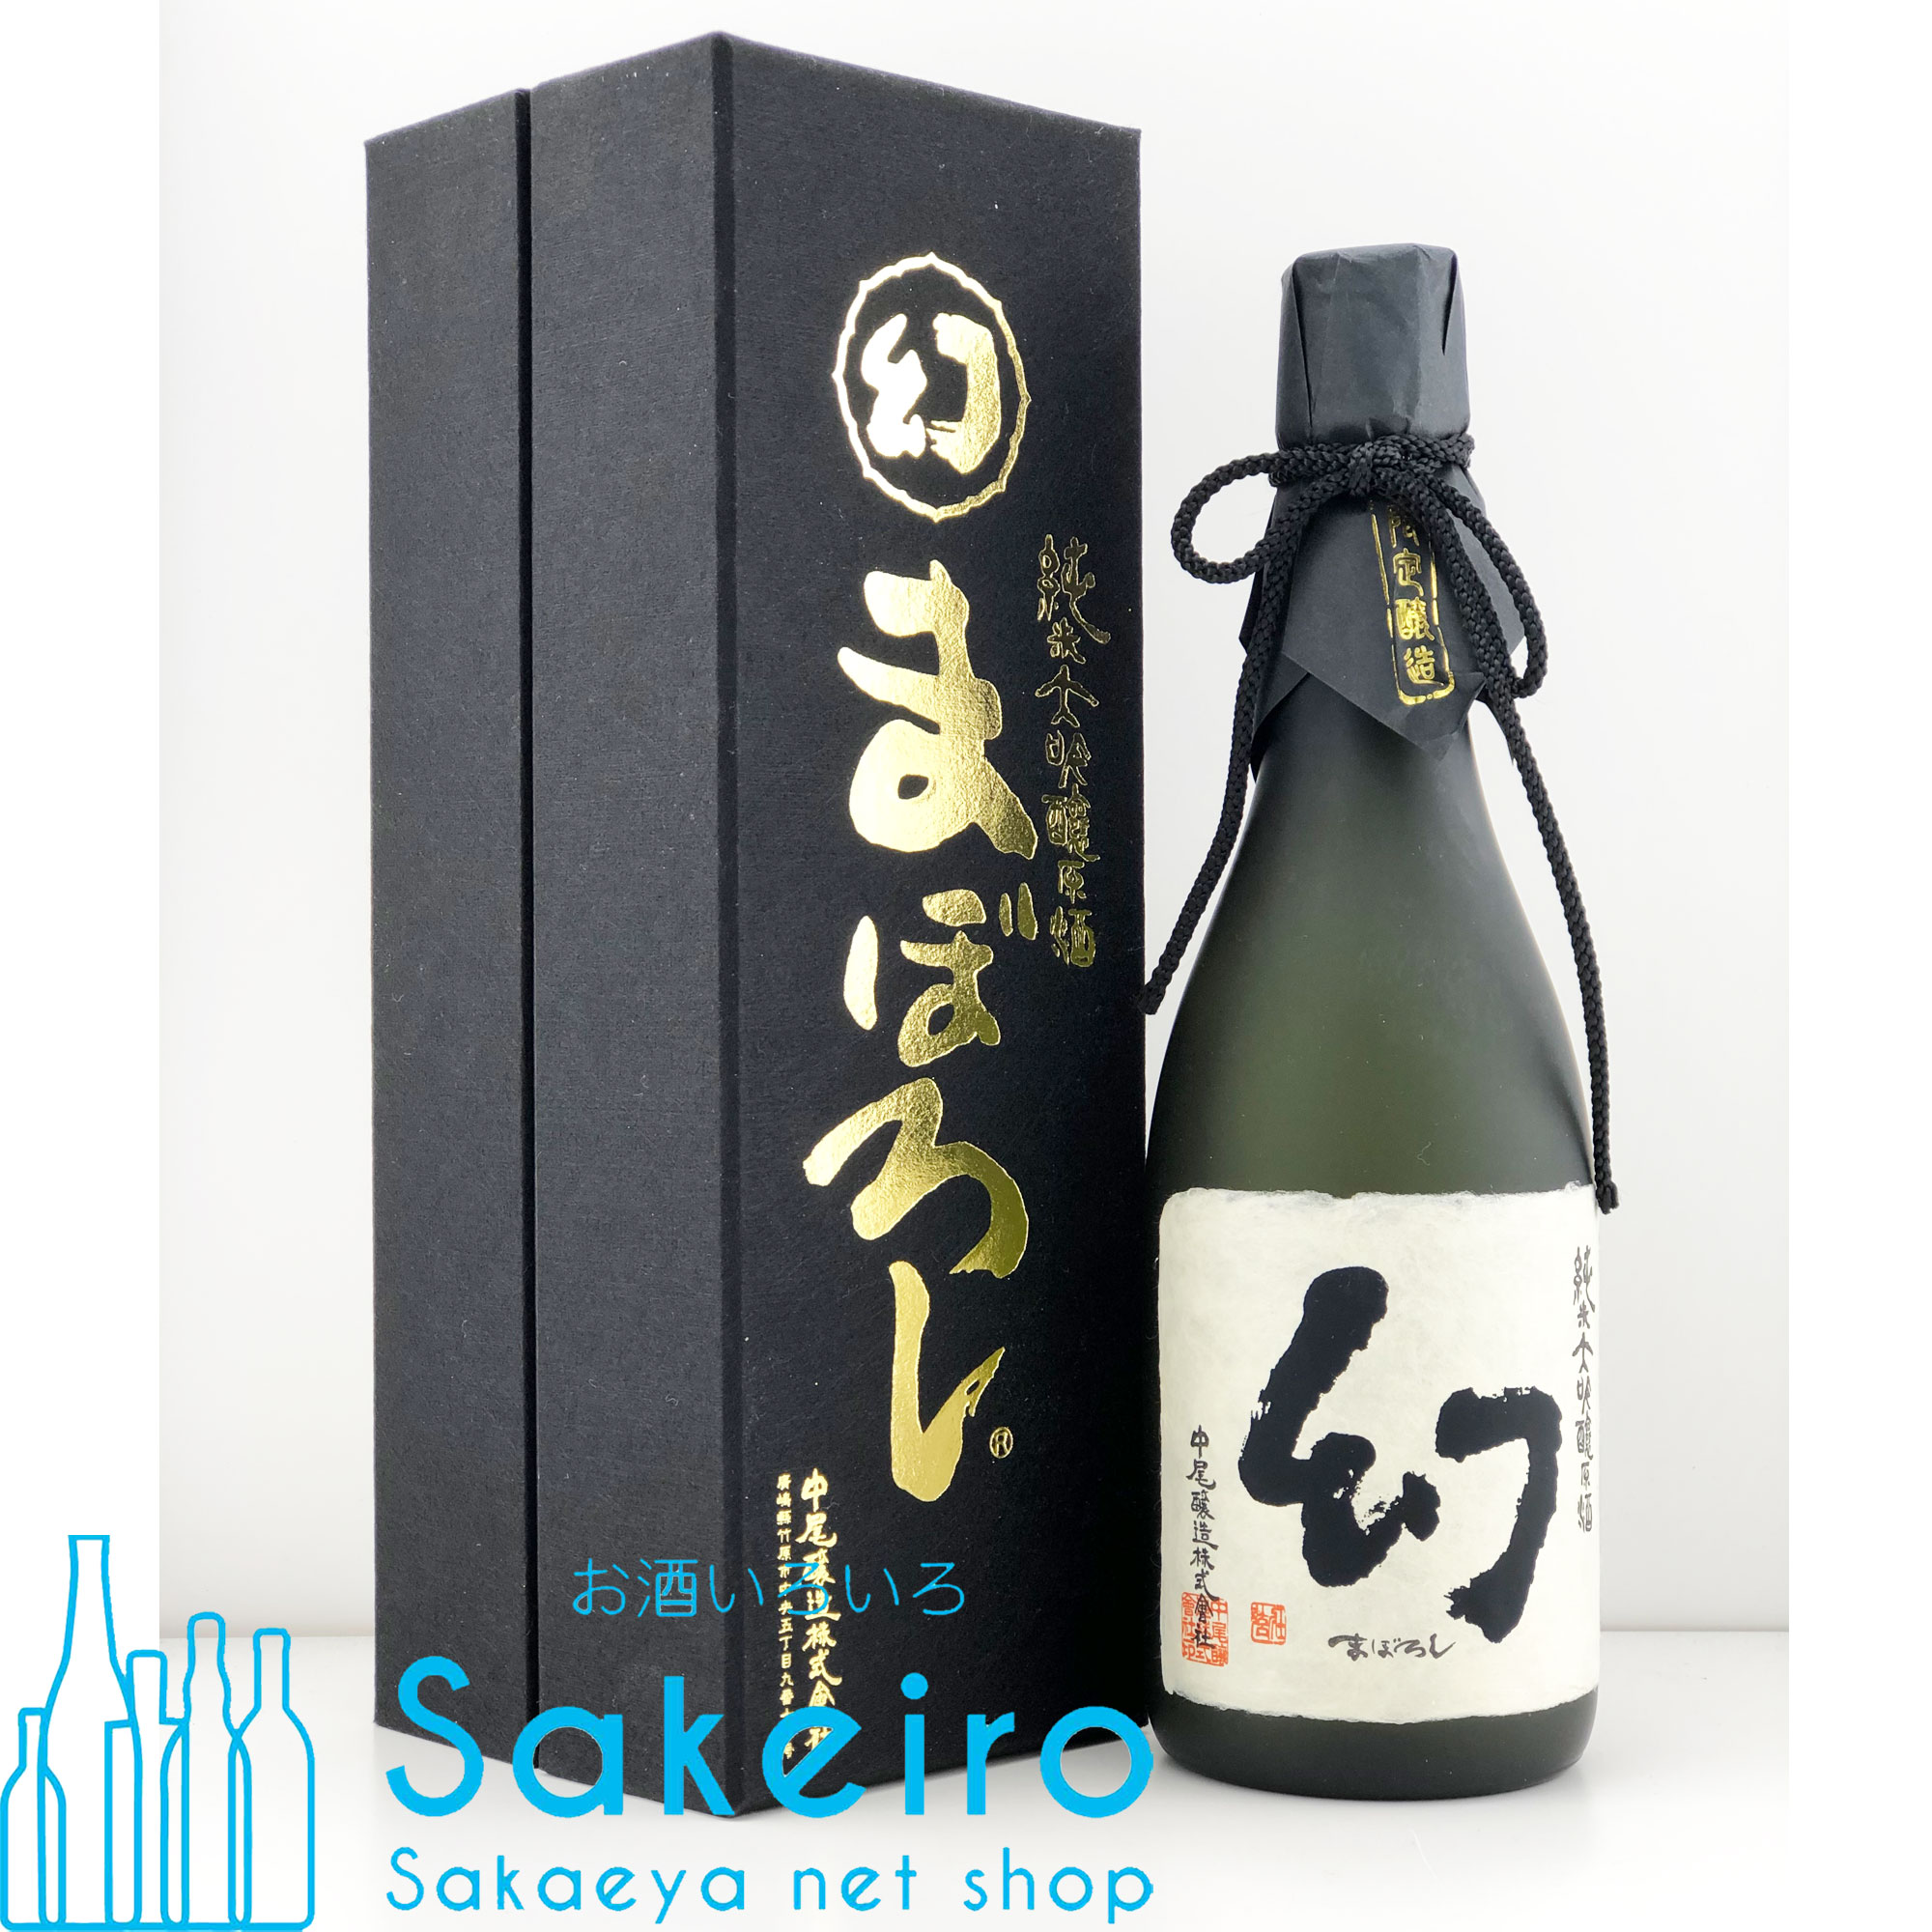 誠鏡 純米大吟醸原酒 まぼろし 黒 720ml 瓶 お酒いろいろ Sakeiro -Sakaeya net shop-